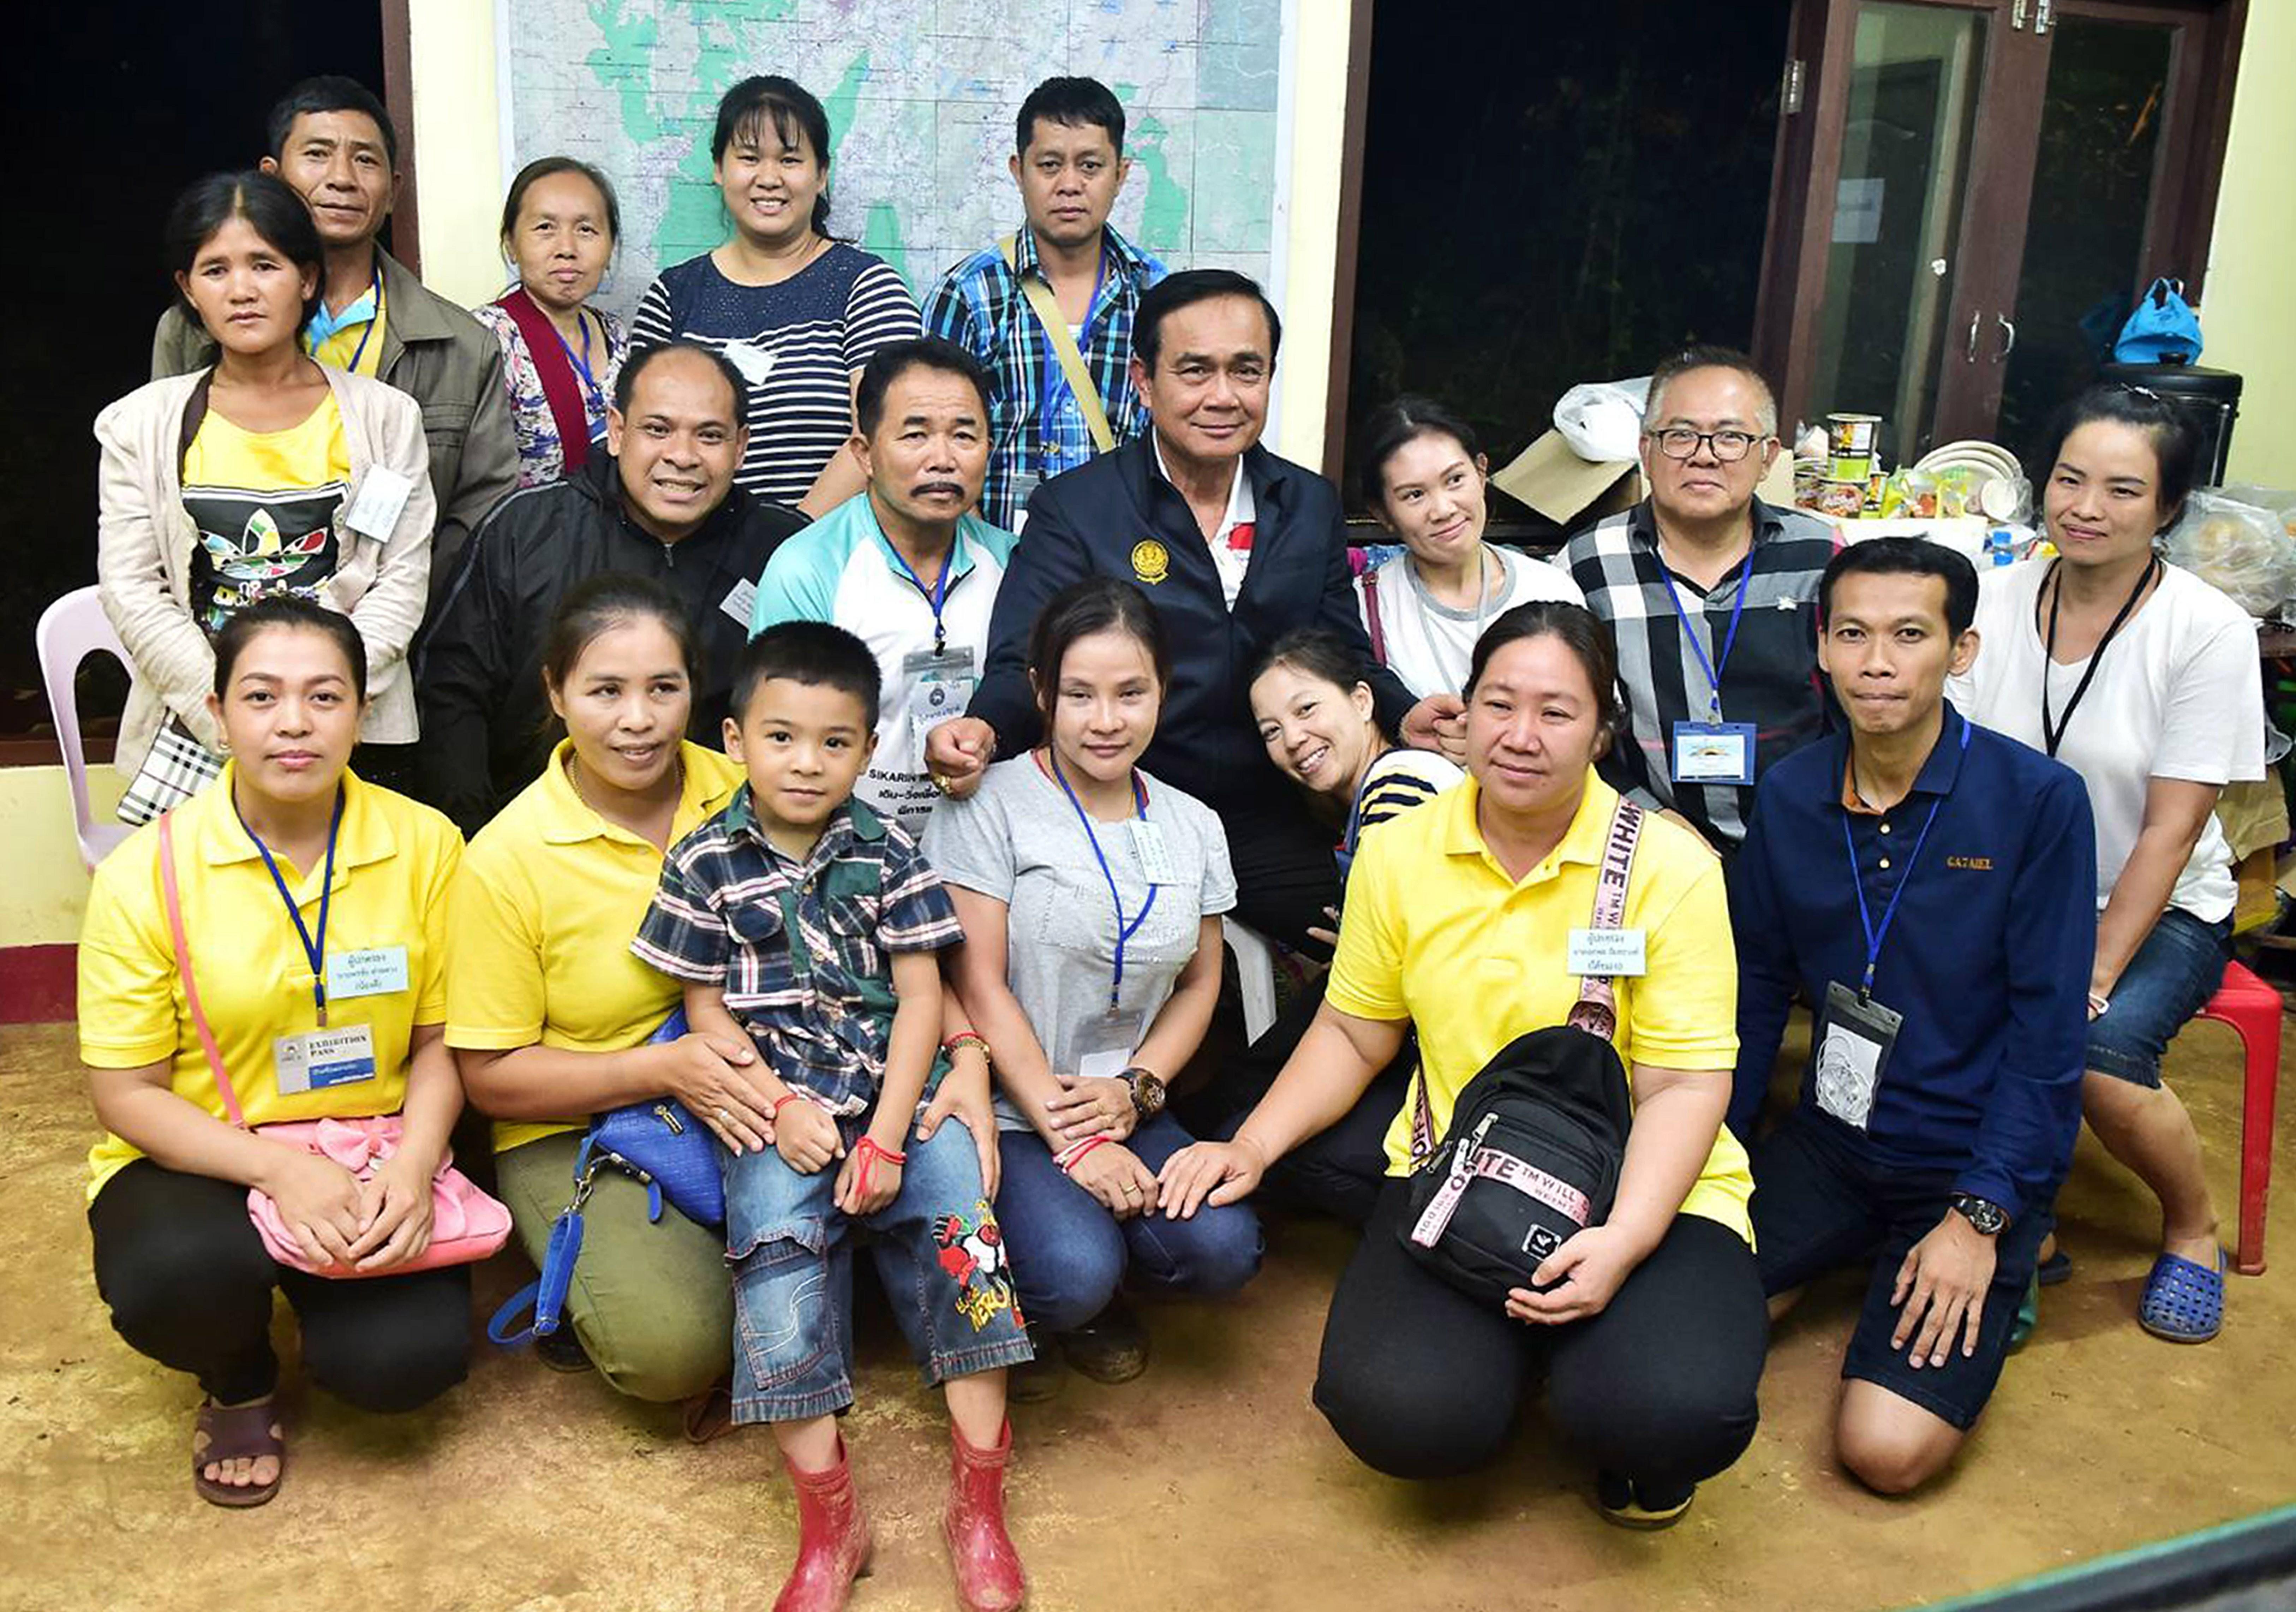 Sensible iniciativa del Barça amb els 12 nens supervivents de la cova de Tailàndia